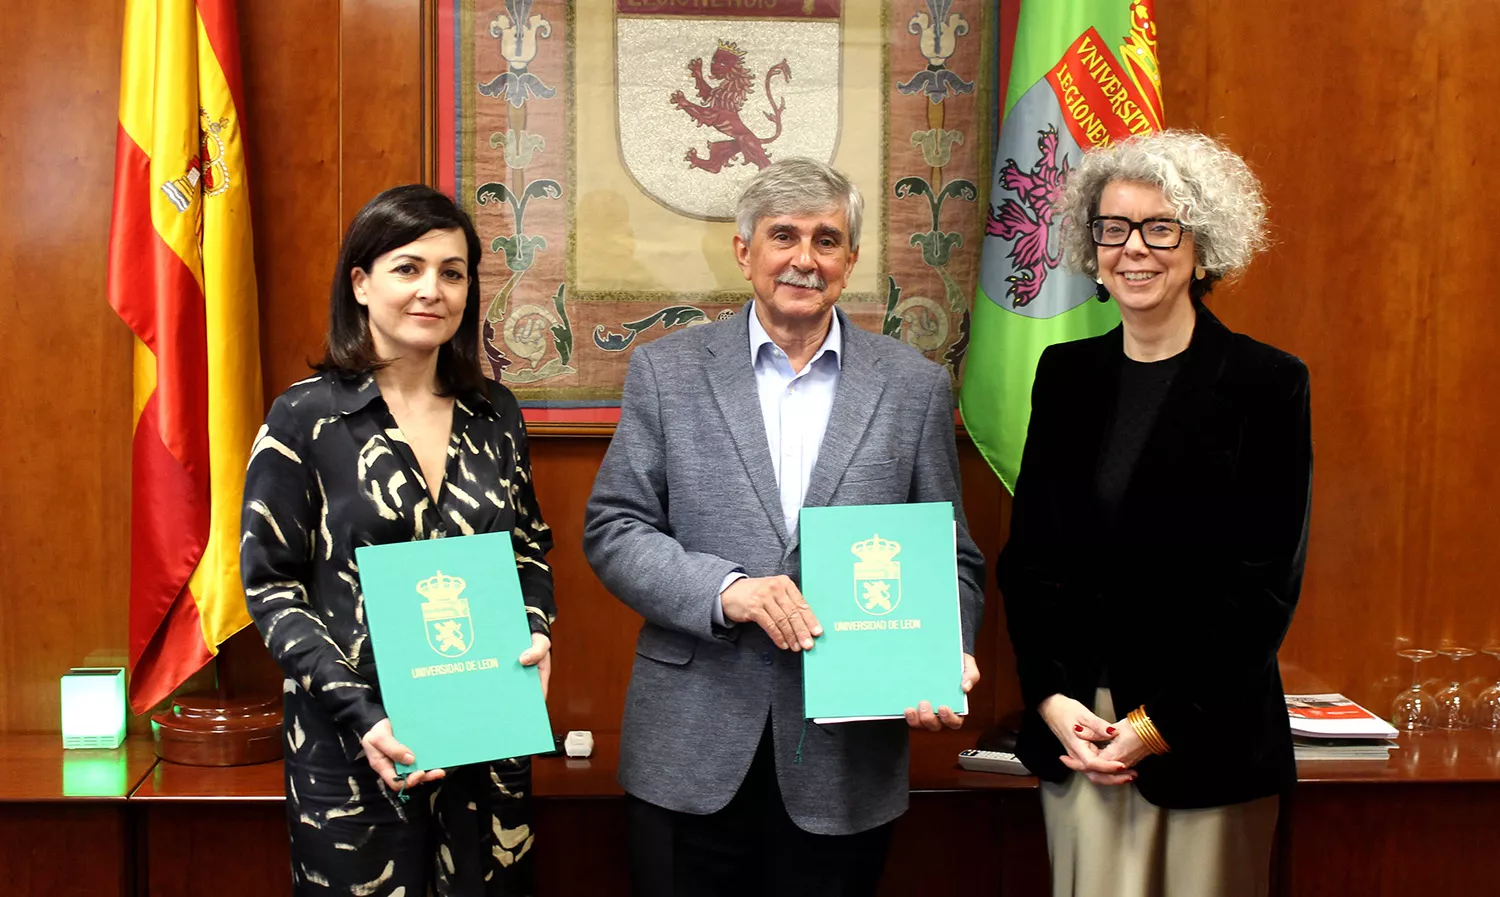 Acuerdo fue rubricado por el rector de la universidad, Juan Francisco García Marín, y la directora territorial de Banca Comercial de Castilla y León Norte de Unicaja Banco, Marga Serna